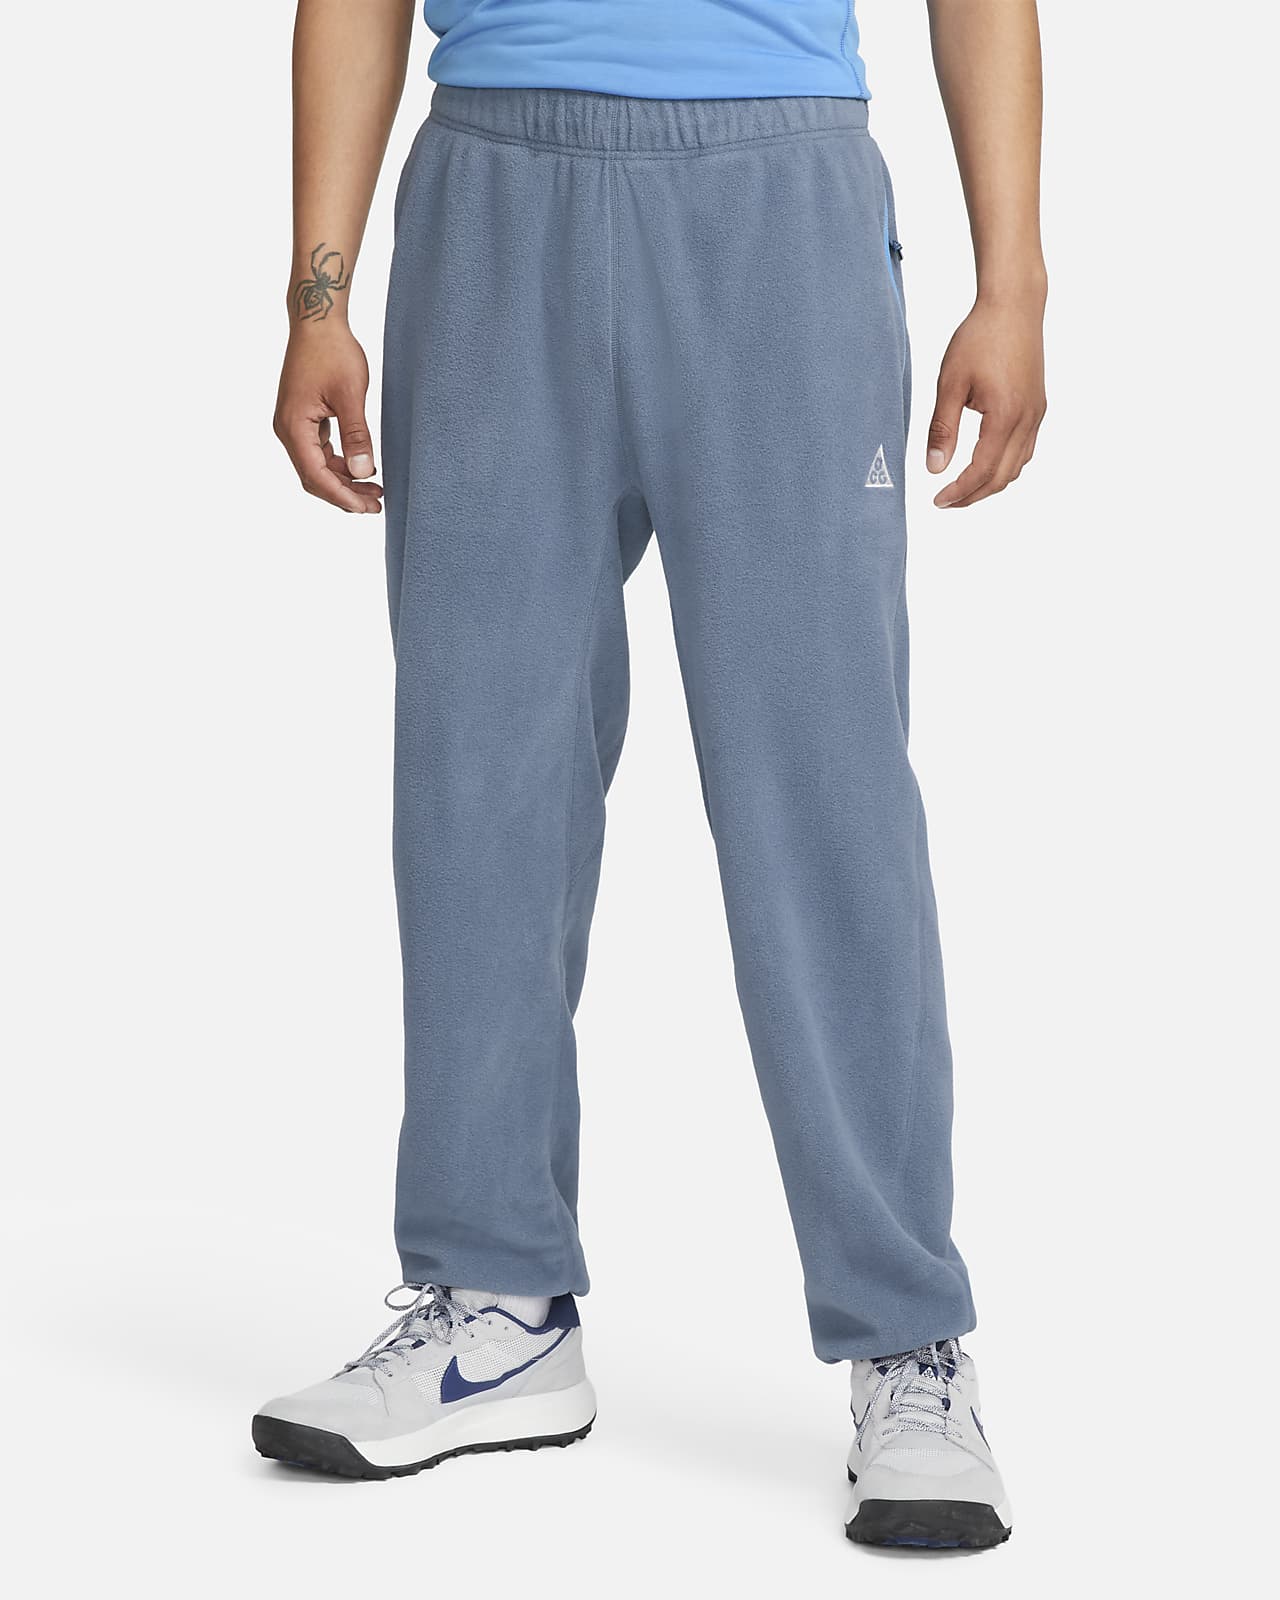  Nike Pants